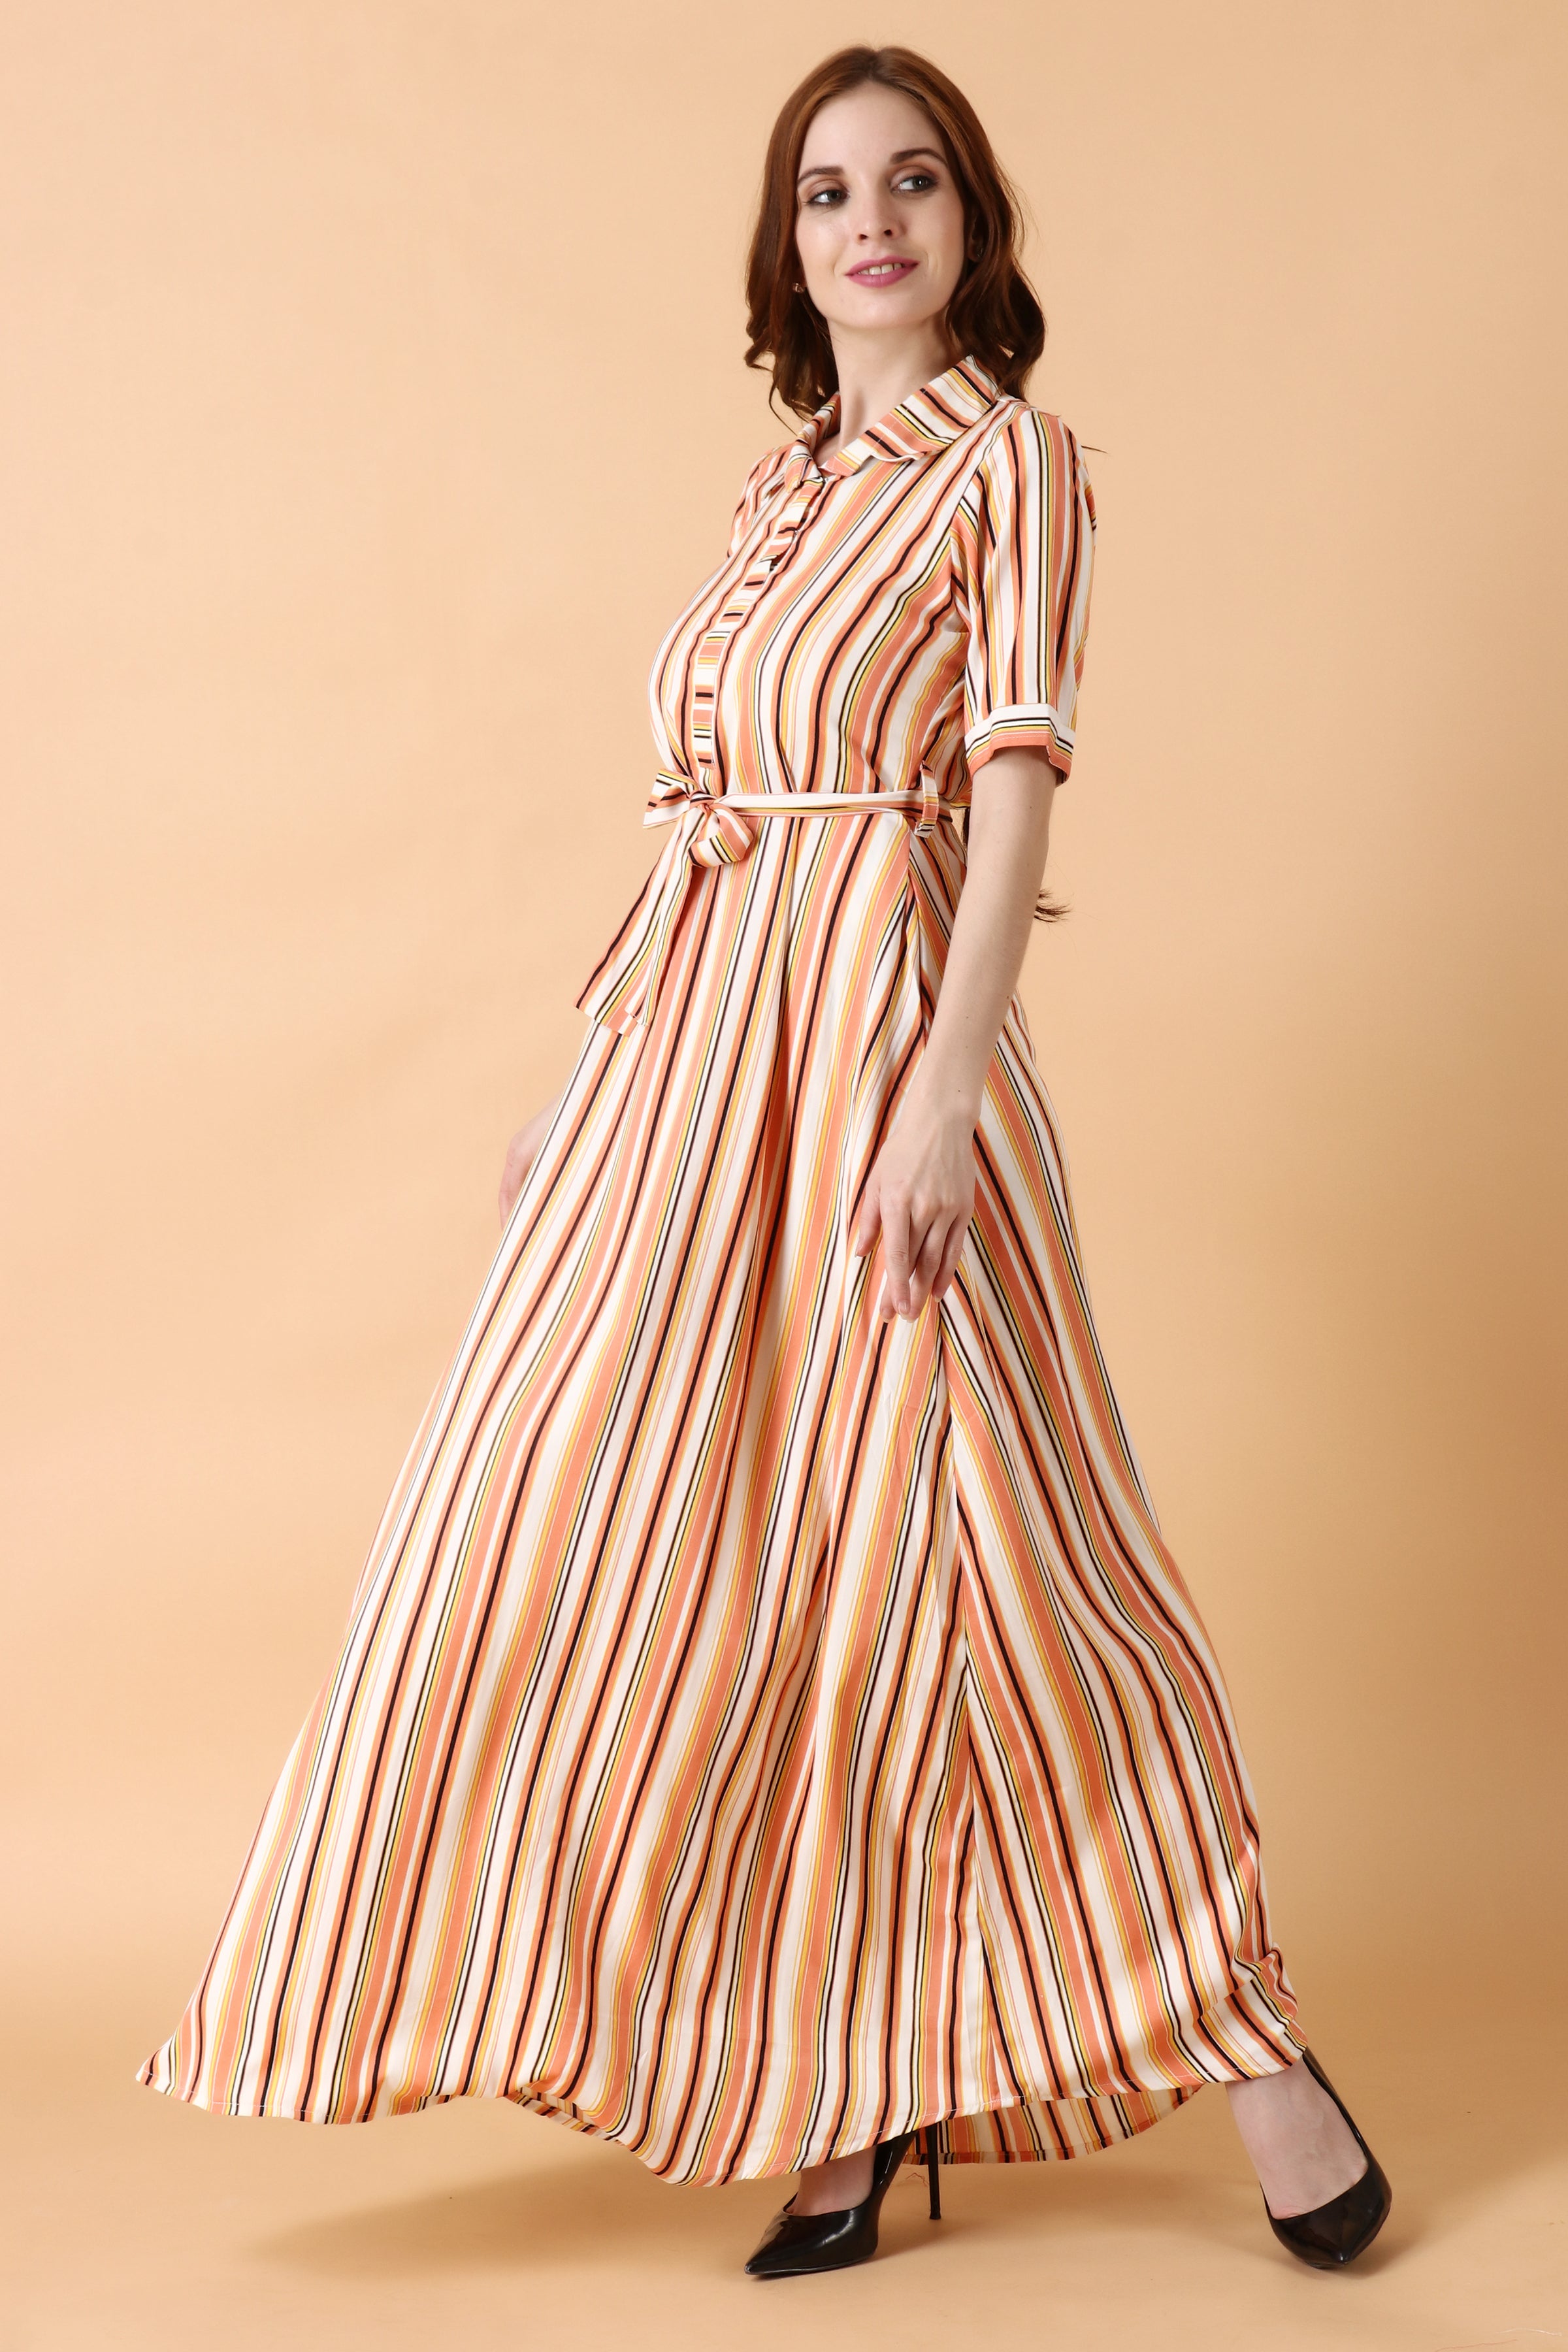 Buy Striped Maxi Dress by Koai at Aza Fashions | Striped maxi dresses,  Vintage boho dress, Maxi dress